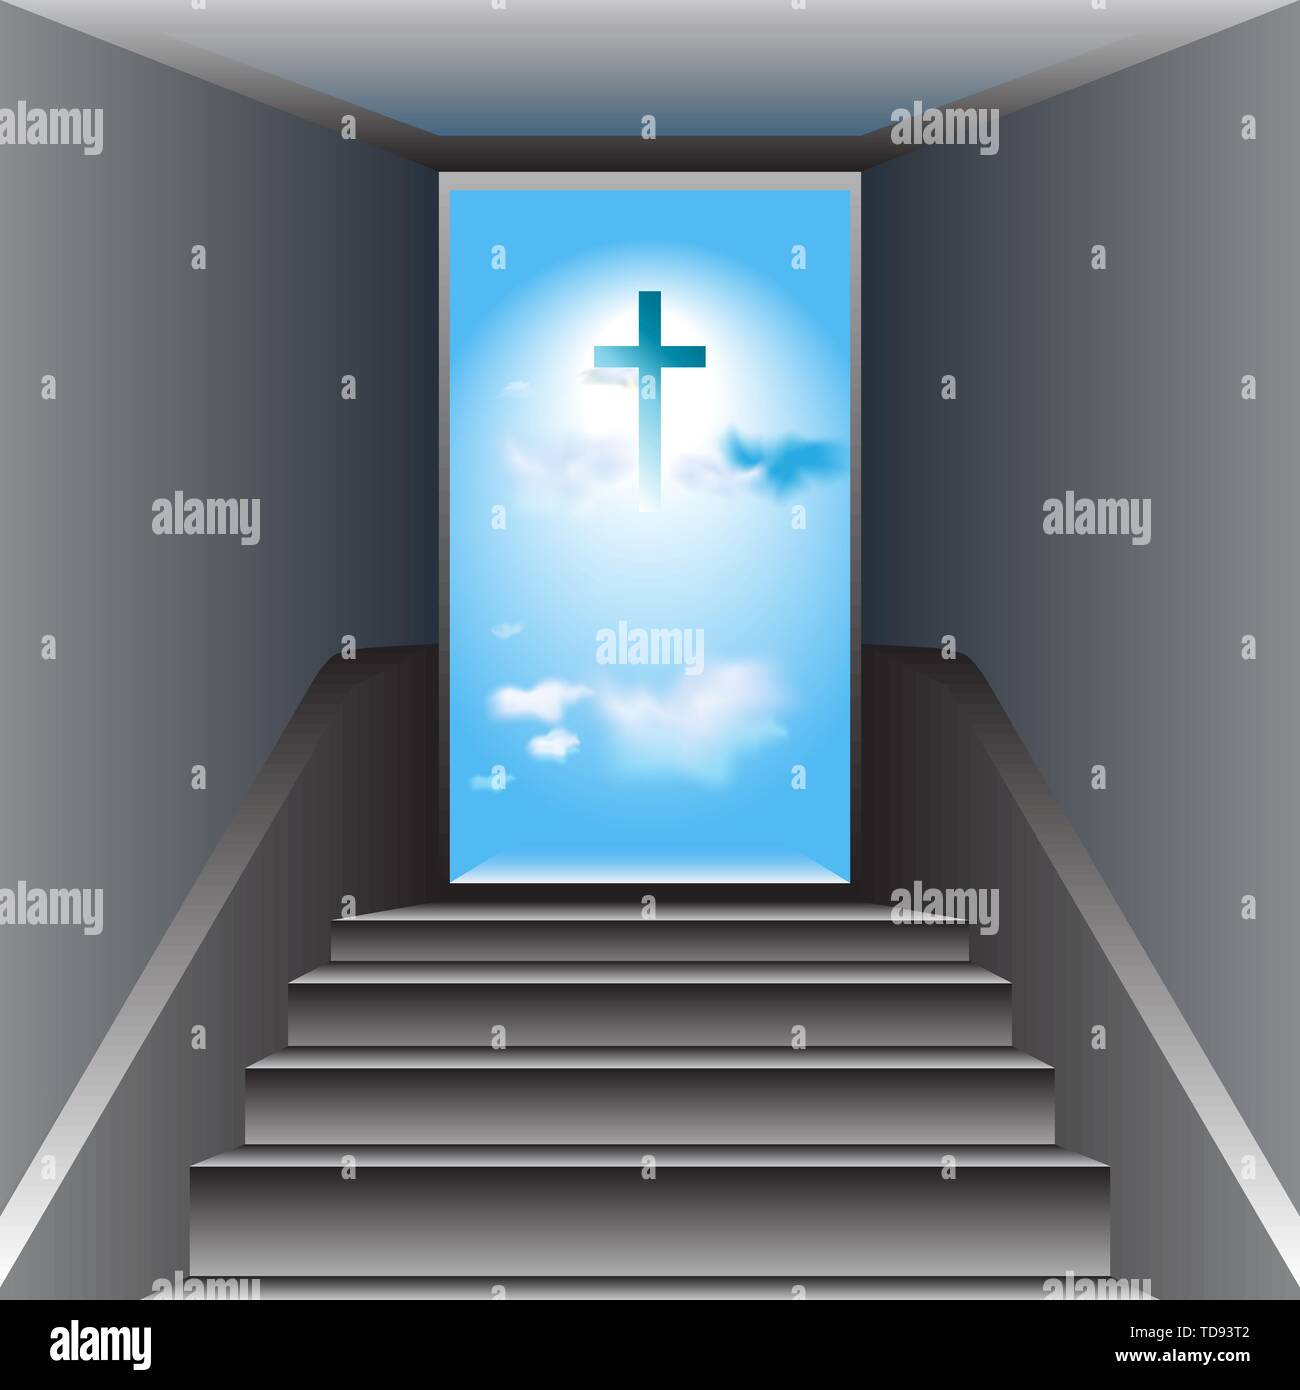 Gray stairway. Open door. Heaven. Blue sky with white clouds. The Cross of Jesus Christ in center. Stock Vector